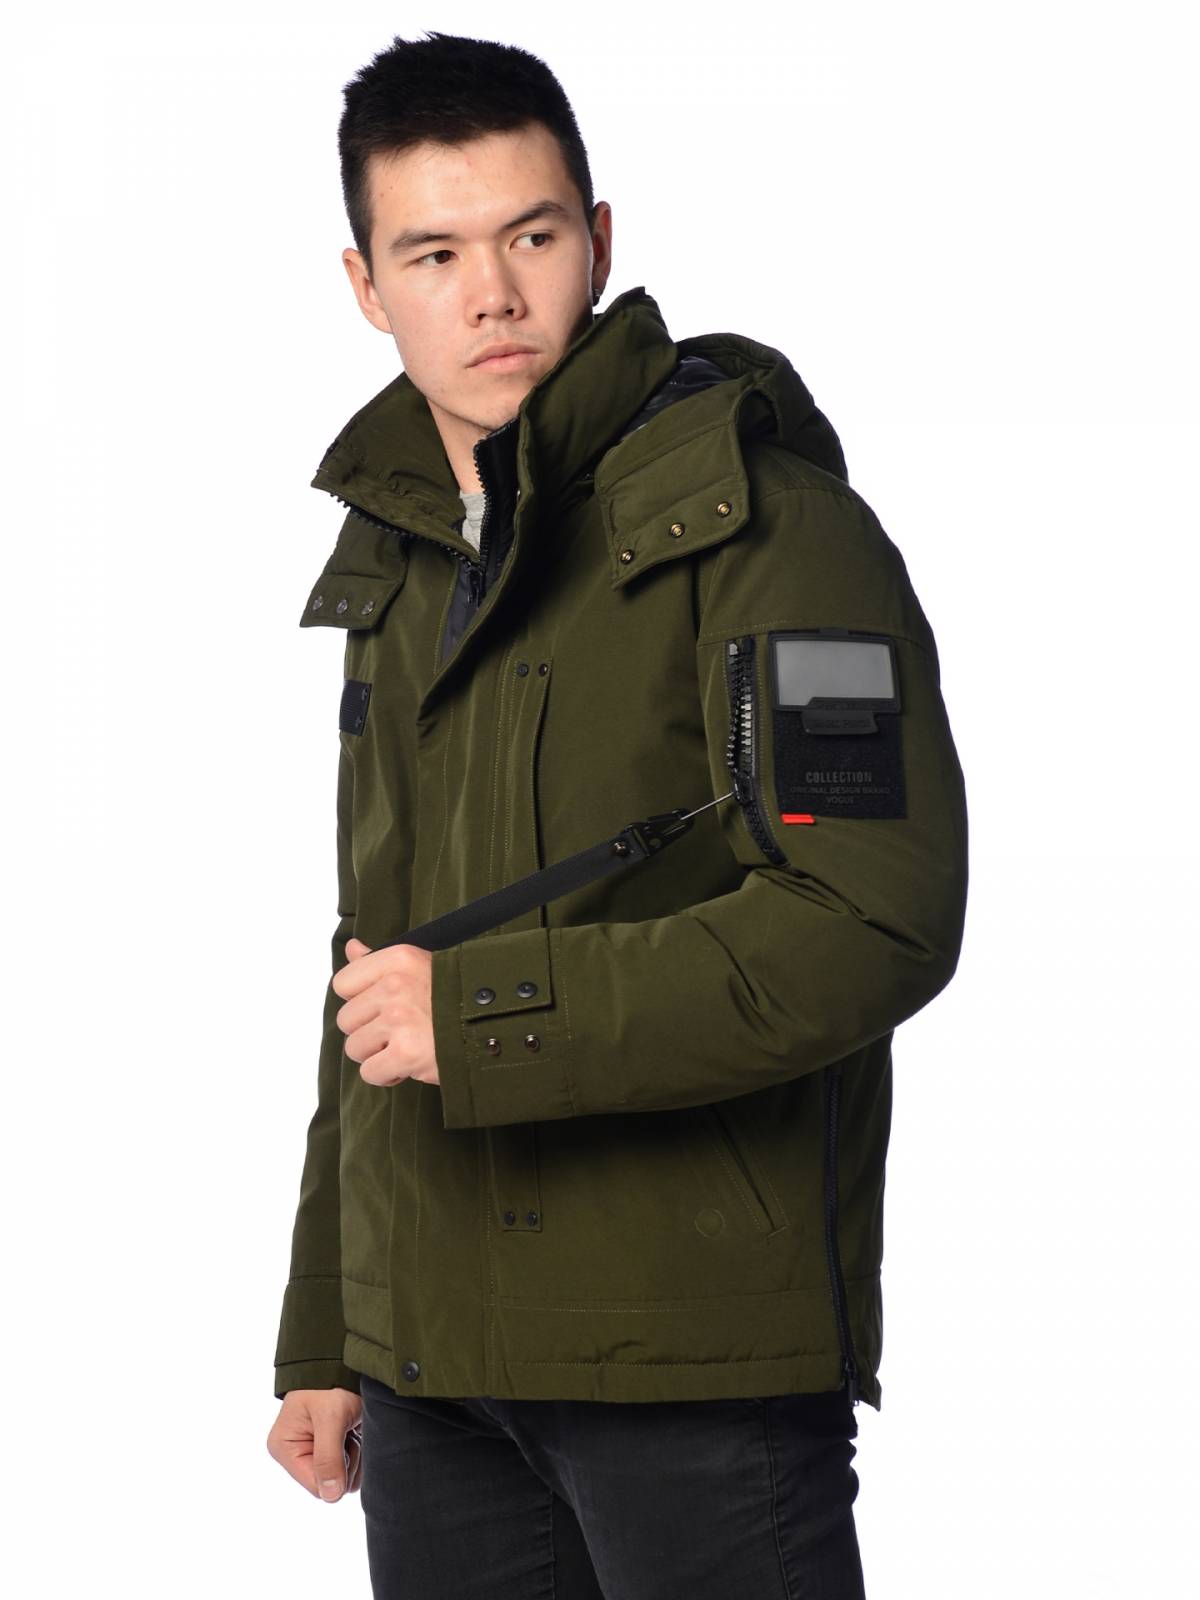 Зимняя куртка мужская Shark Force 3991 зеленая 56 RU